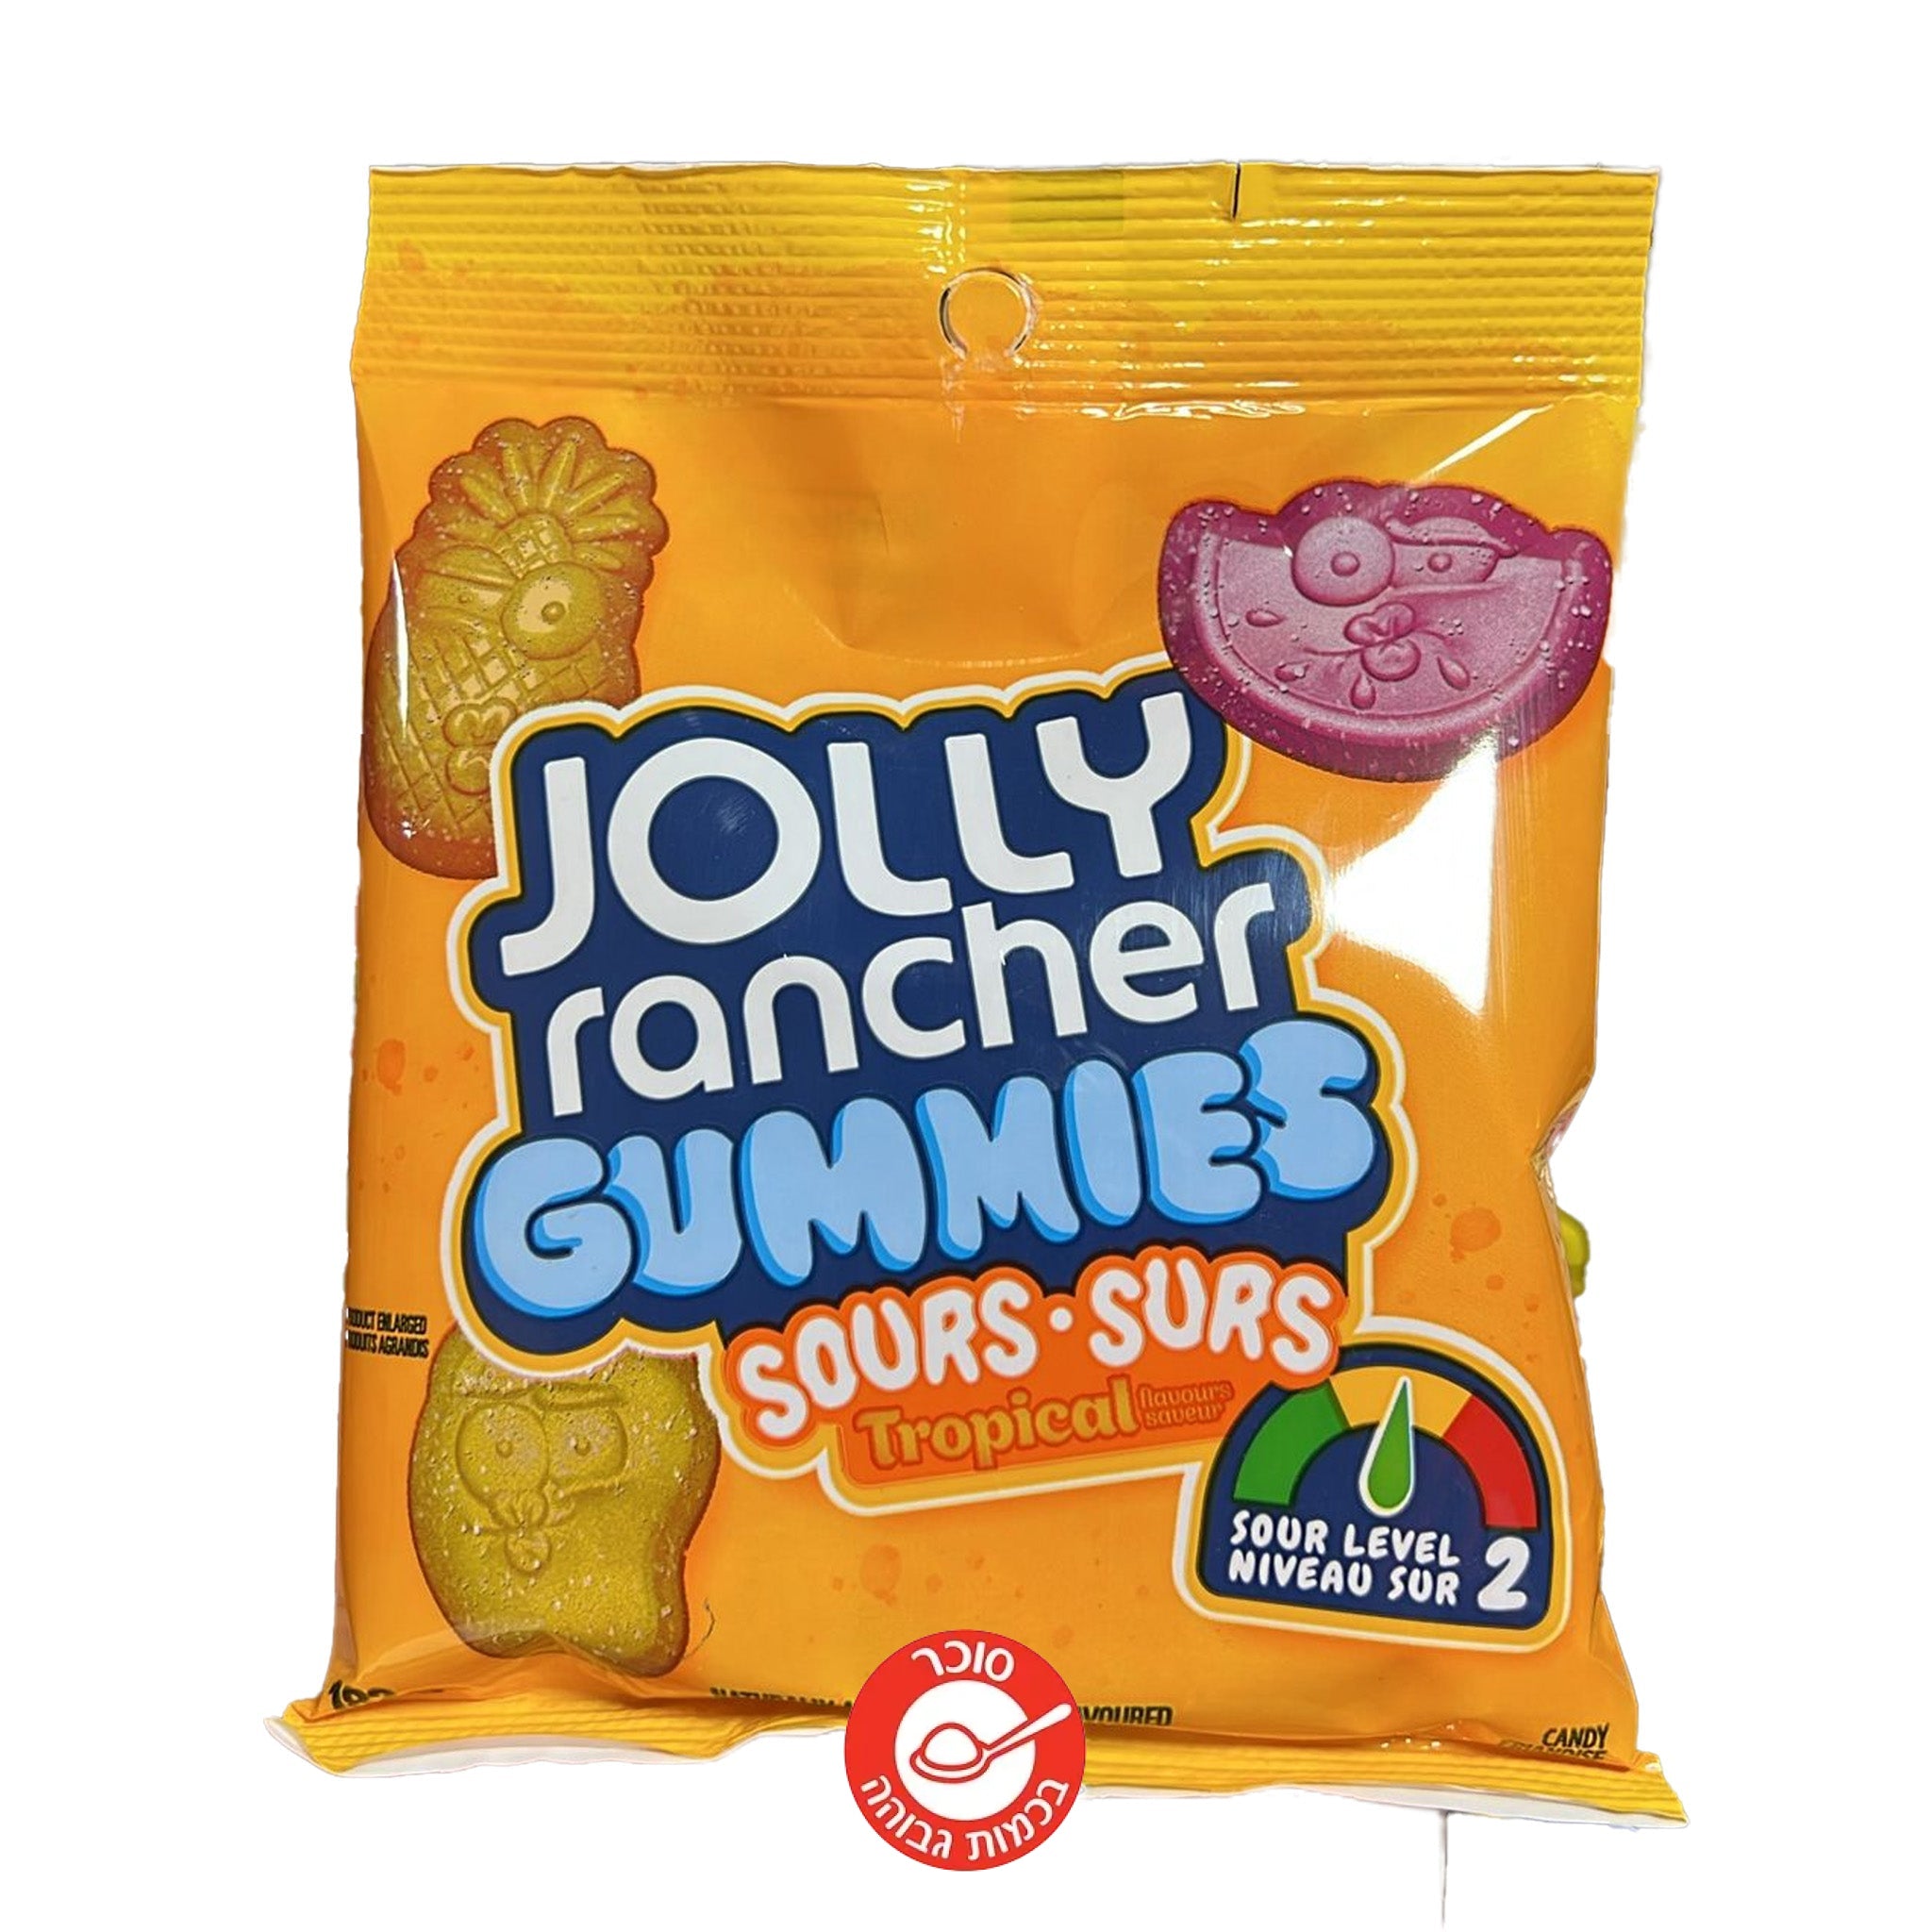 Jolly Rancher Gummies Sour ג'ולי ראנצ'ר סוכריות גומי חמוצות בטעם טרופי